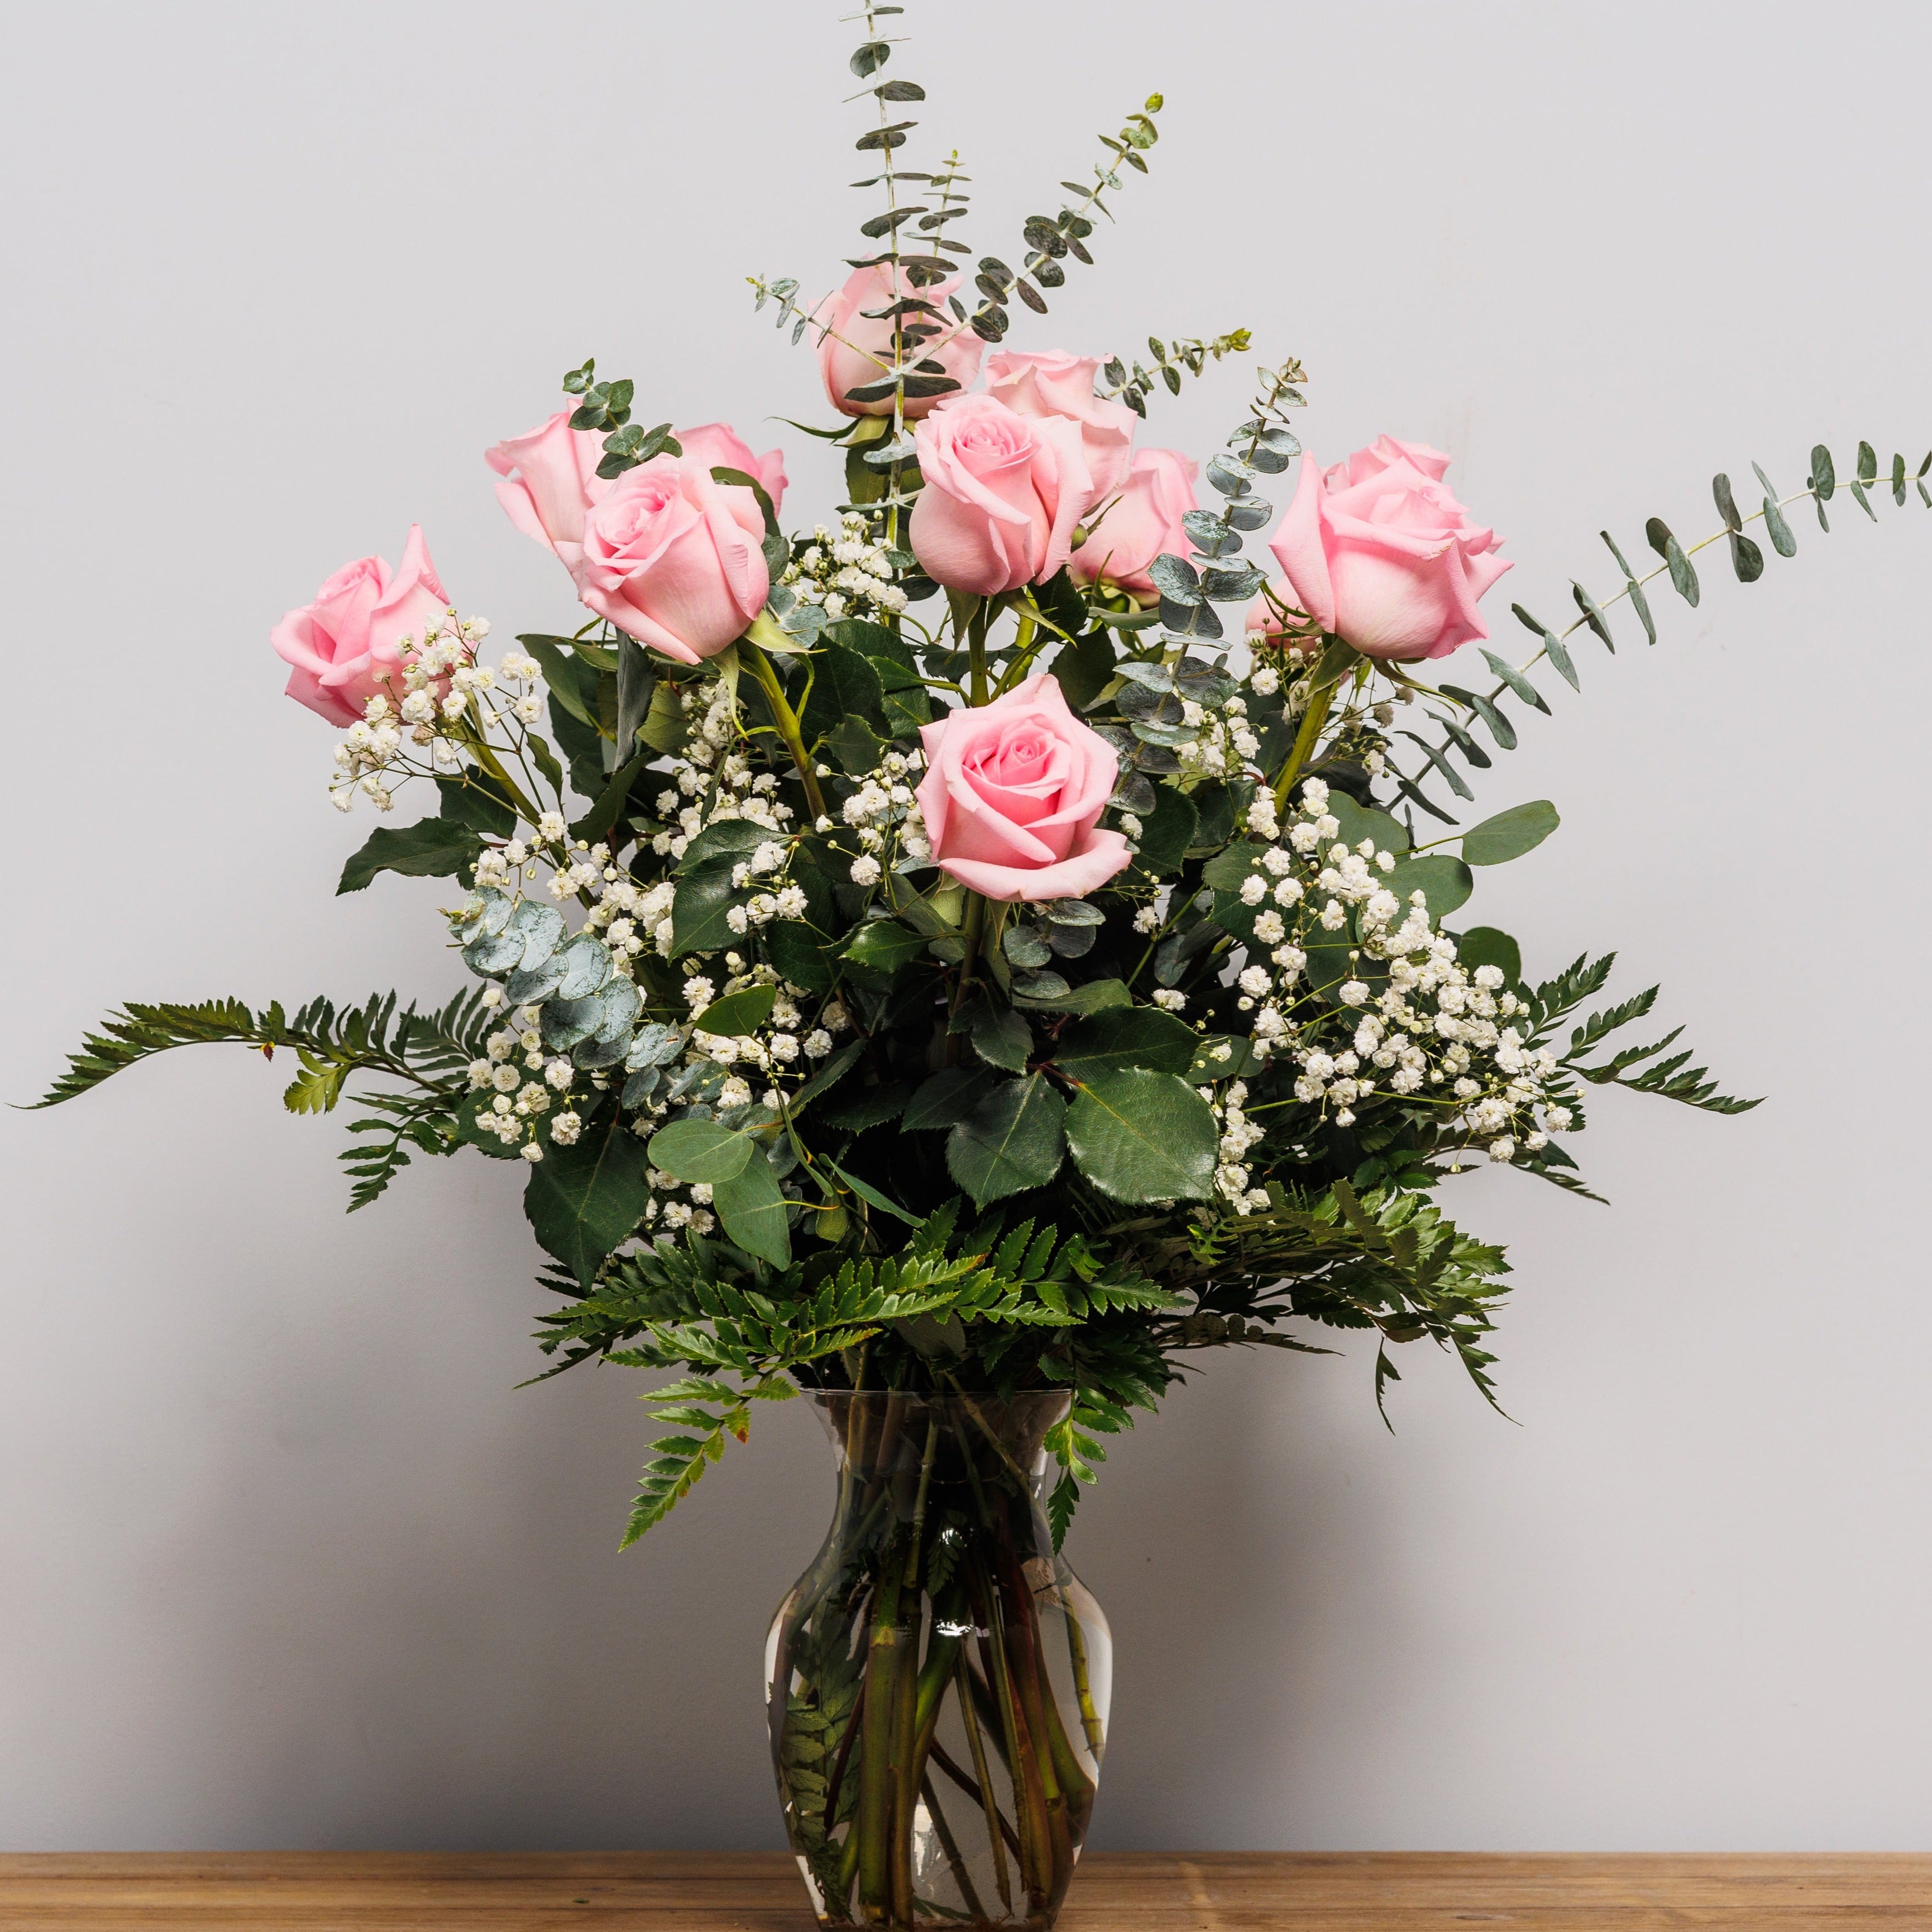 A dozen light pink roses arranged in a vase.